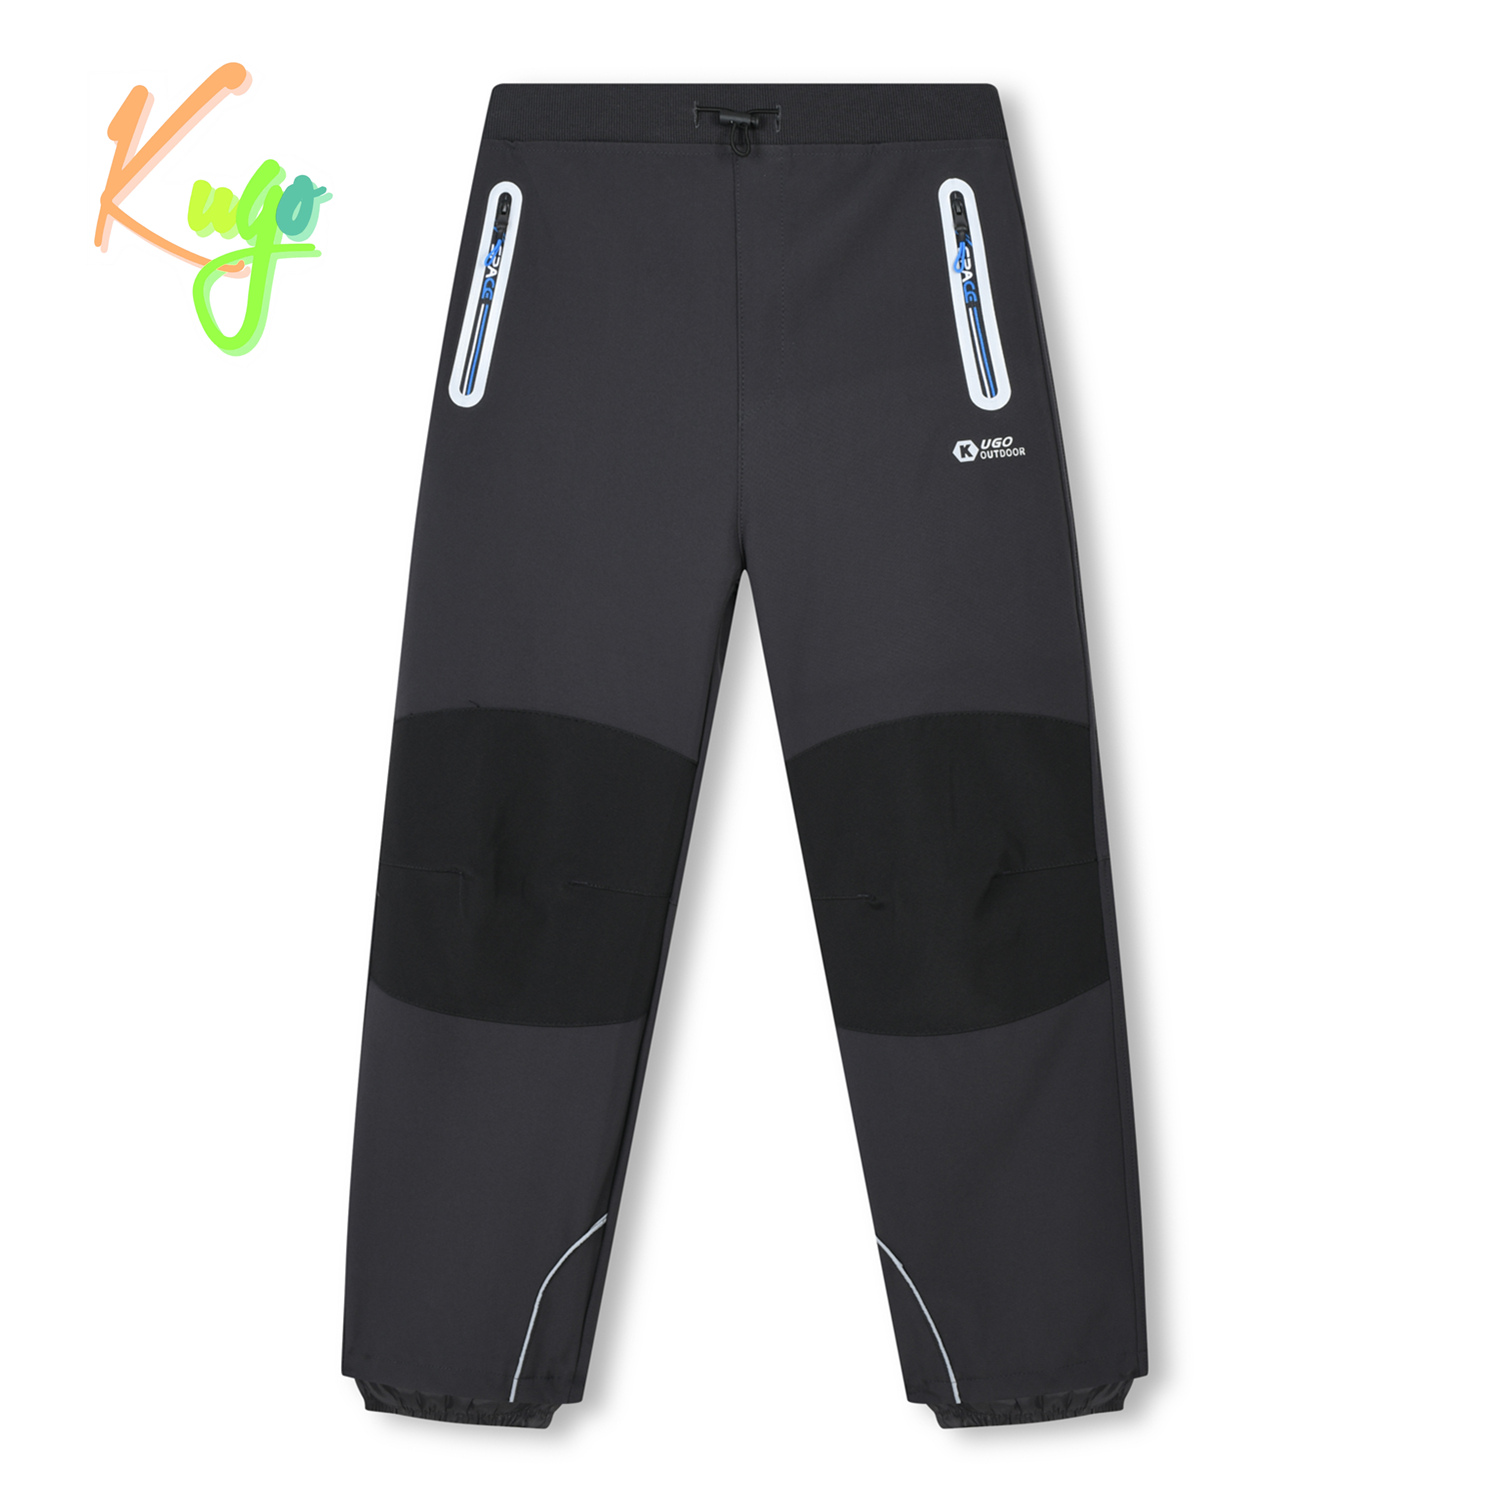 Chlapecké softshellové kalhoty - KUGO HK3119, tmavě šedá / modré zipy Barva: Šedá, Velikost: 164